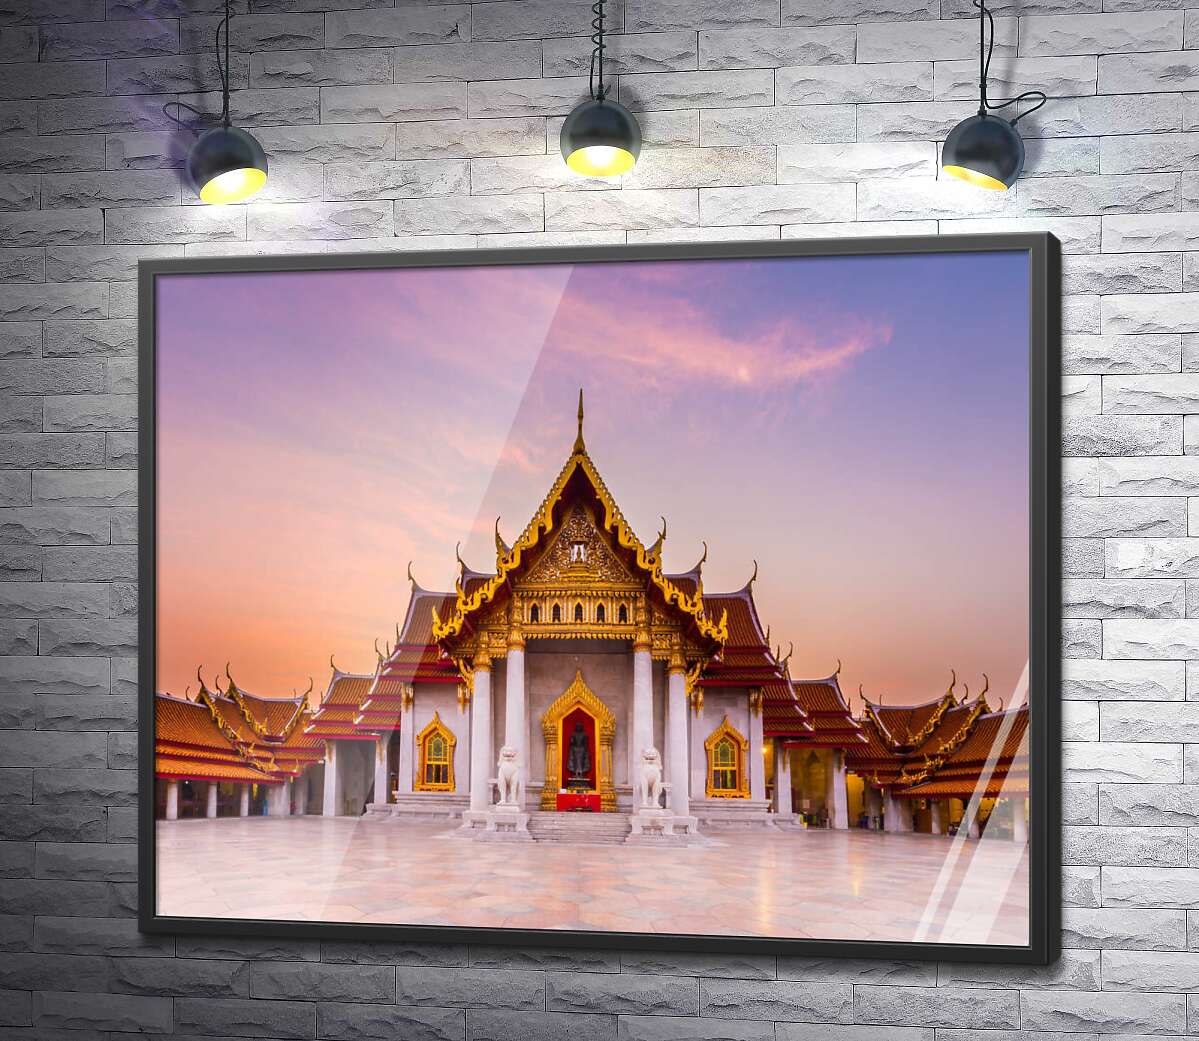 постер Довершение тайской архитектуры – буддийский храм Ват Бенчамабопхит (Wat Benchamabophit)